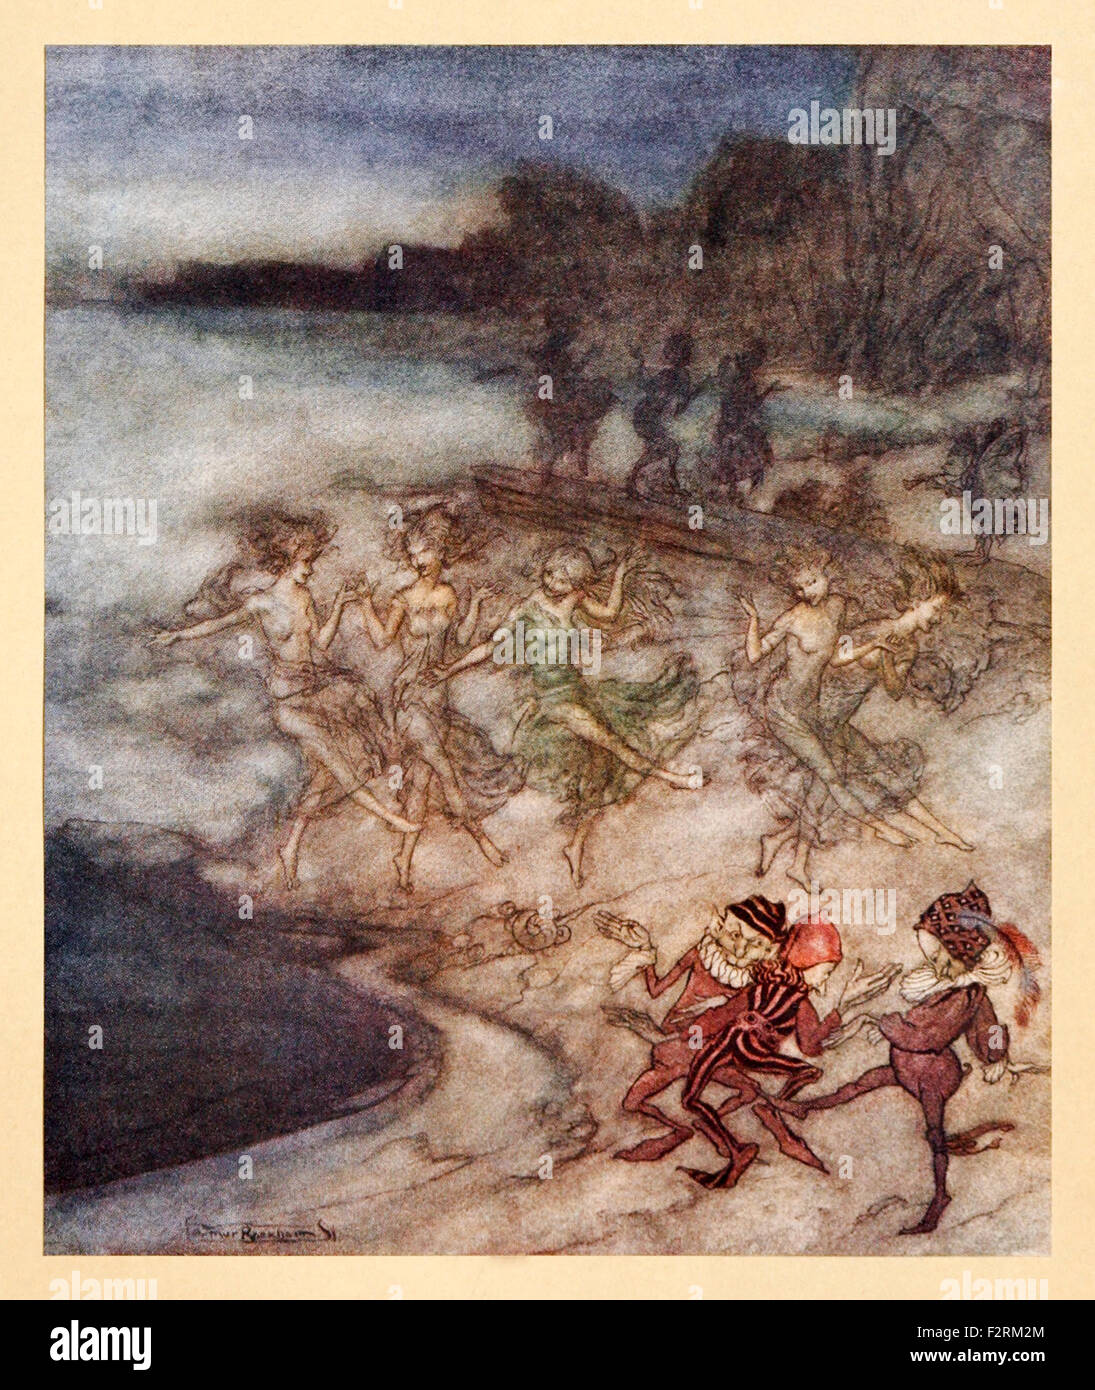 'E sulle sabbie fulvo e ripiani viaggio il pert fatine e dapper elfi' da 'Comus' da John Milton, illustrazione di Arthur Rackham (1867-1939). Vedere la descrizione per maggiori informazioni. Foto Stock